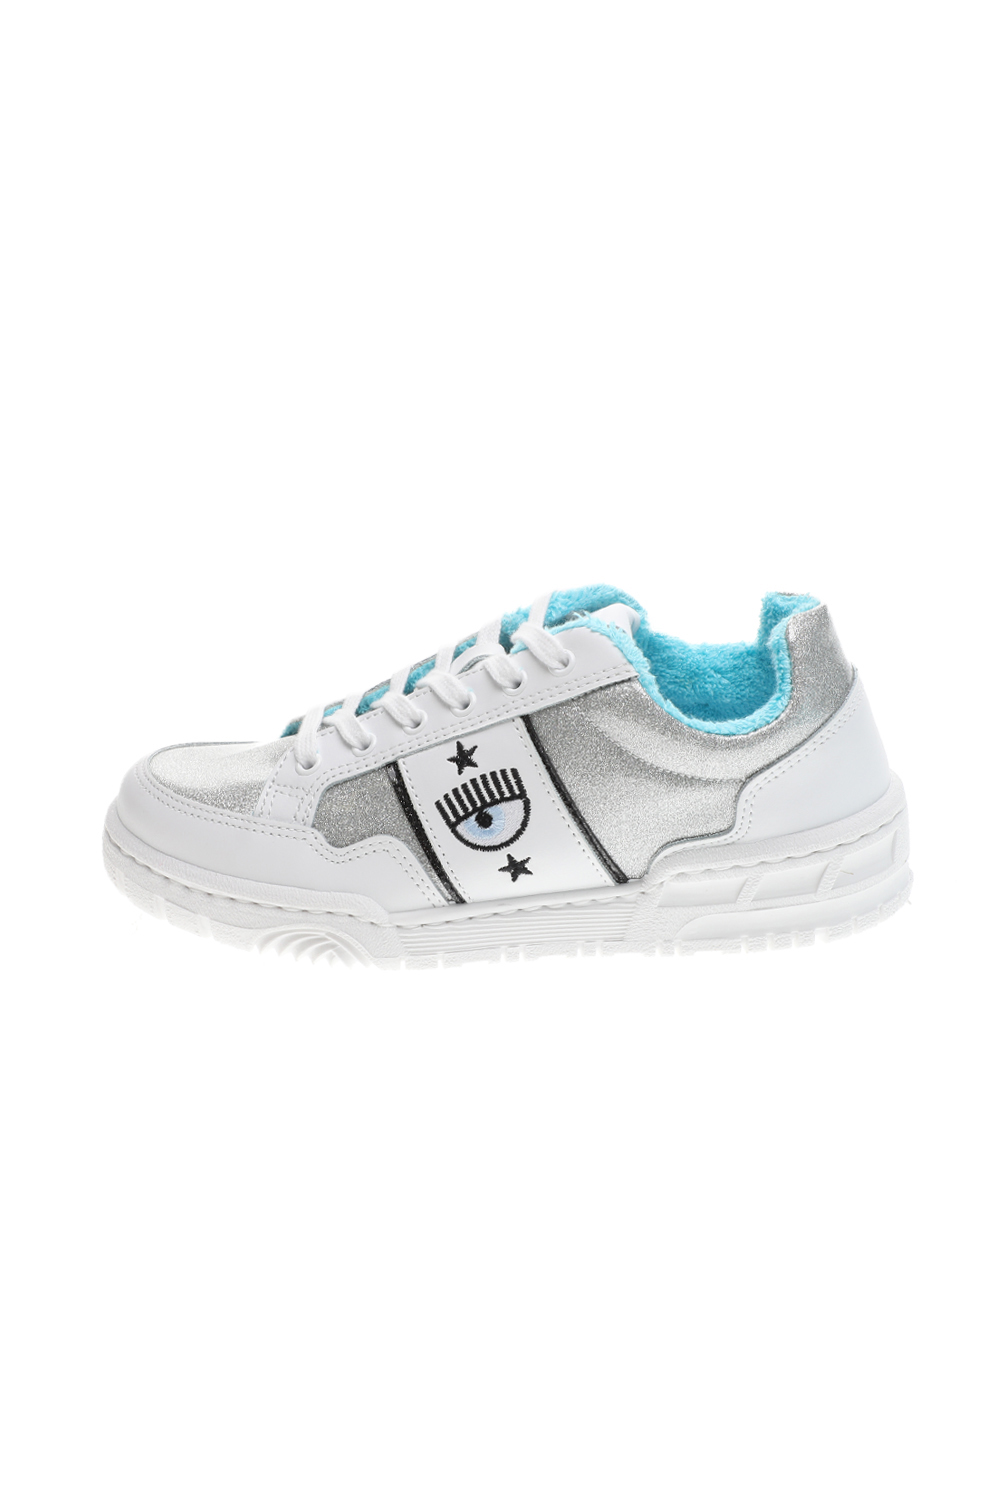 Γυναικεία/Παπούτσια/Sneakers CHIARRA FERRAGNI - Γυναικεία sneakers CHIARRA FERRAGNI CF2832-067 sneakers